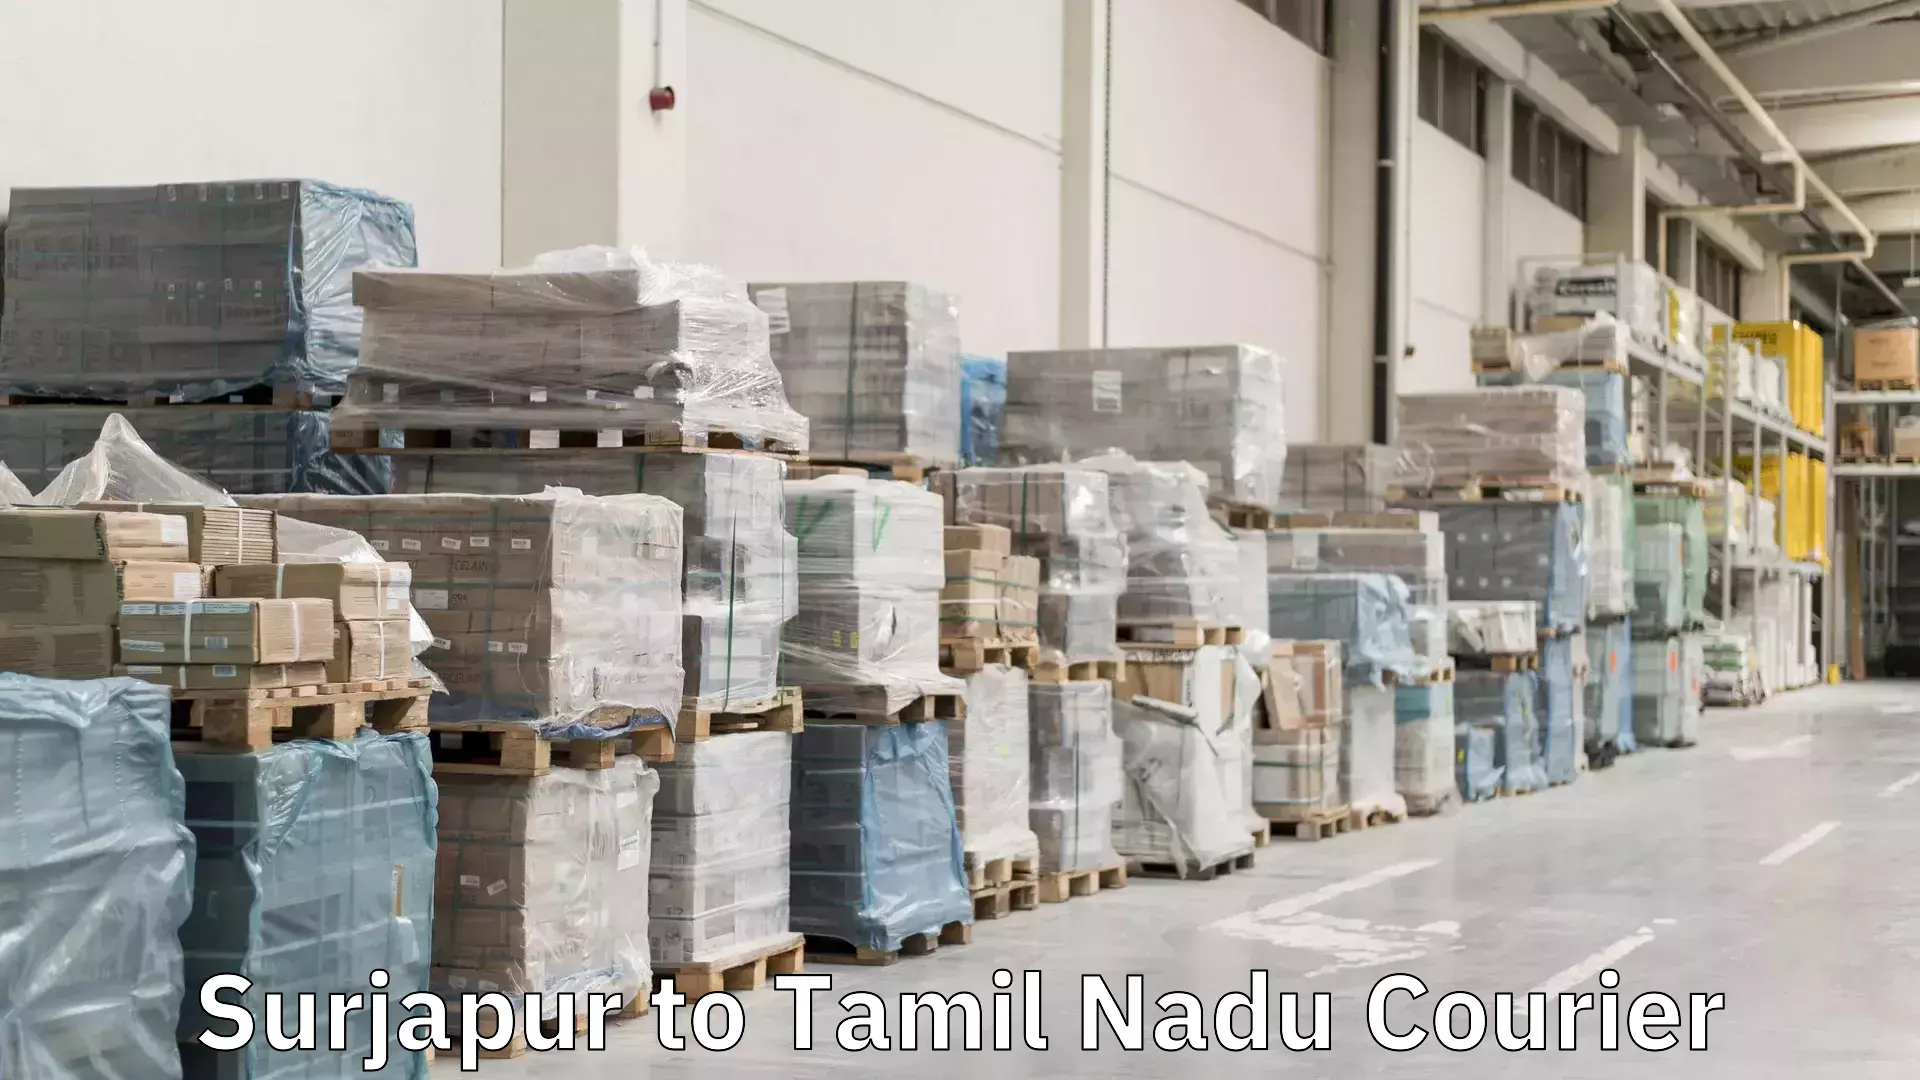 Multi-modal transport in Surjapur to Tamil Nadu